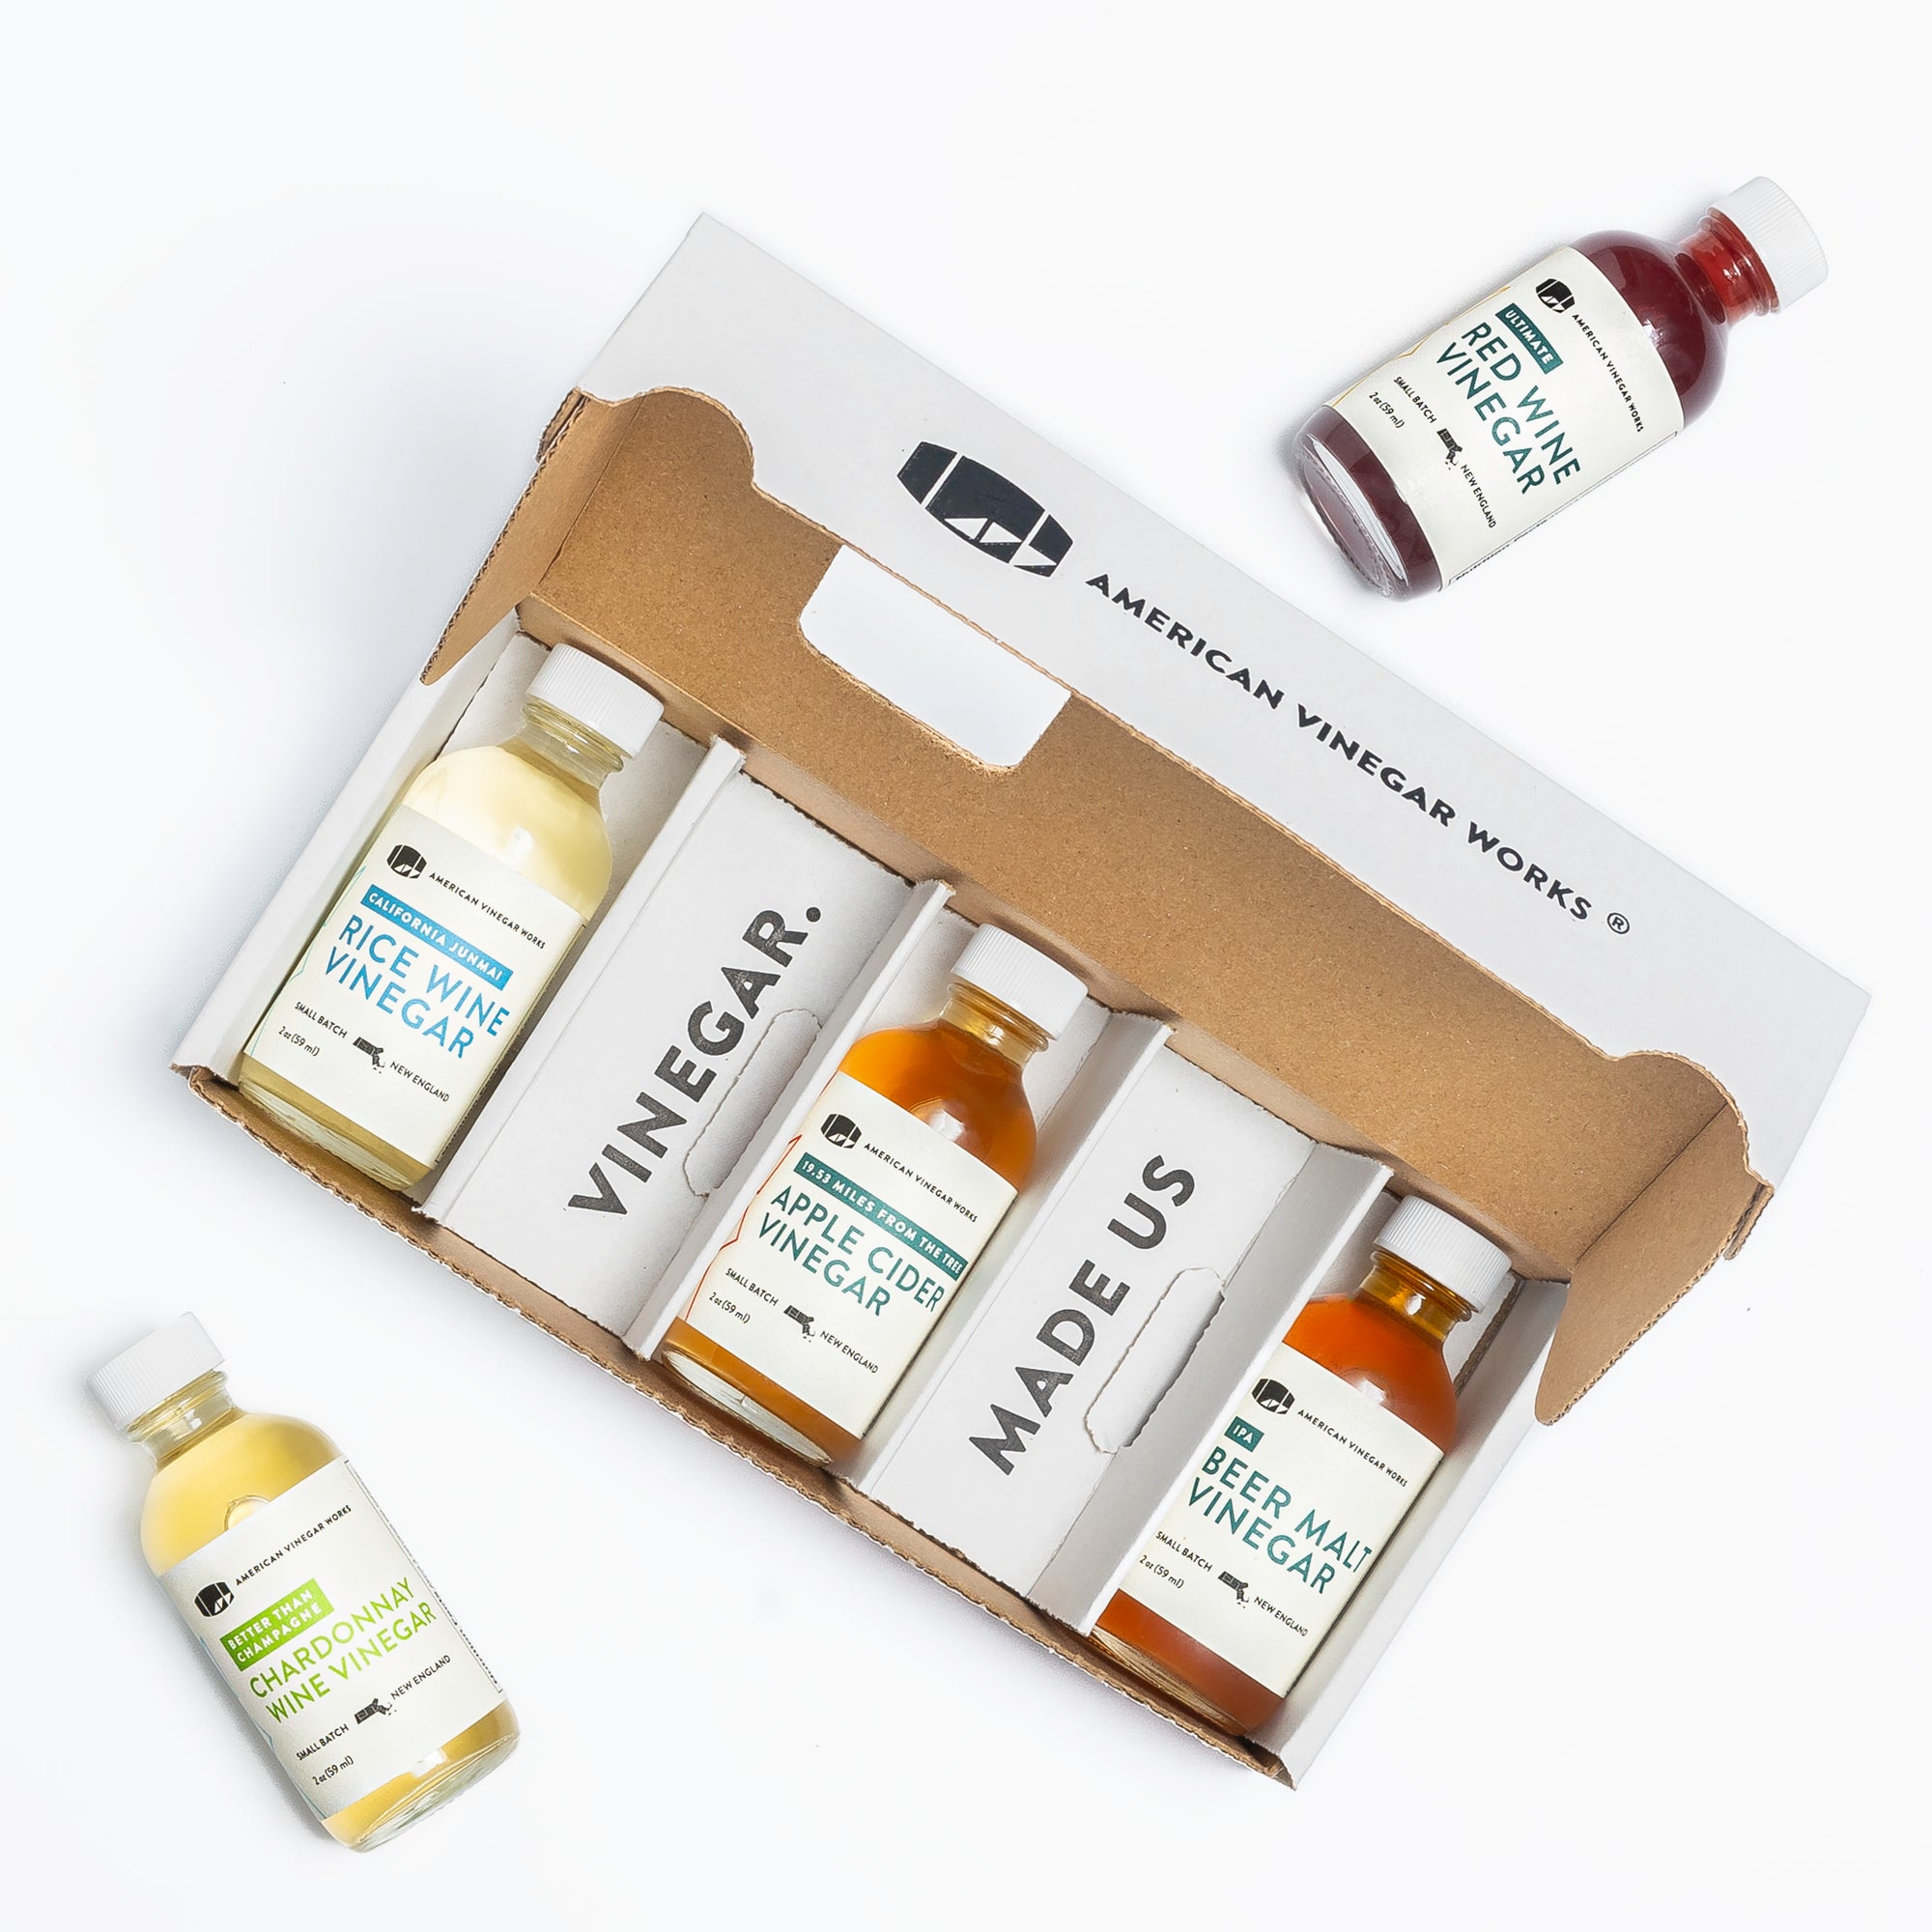 Artisanal Vinegar Tasting Kit